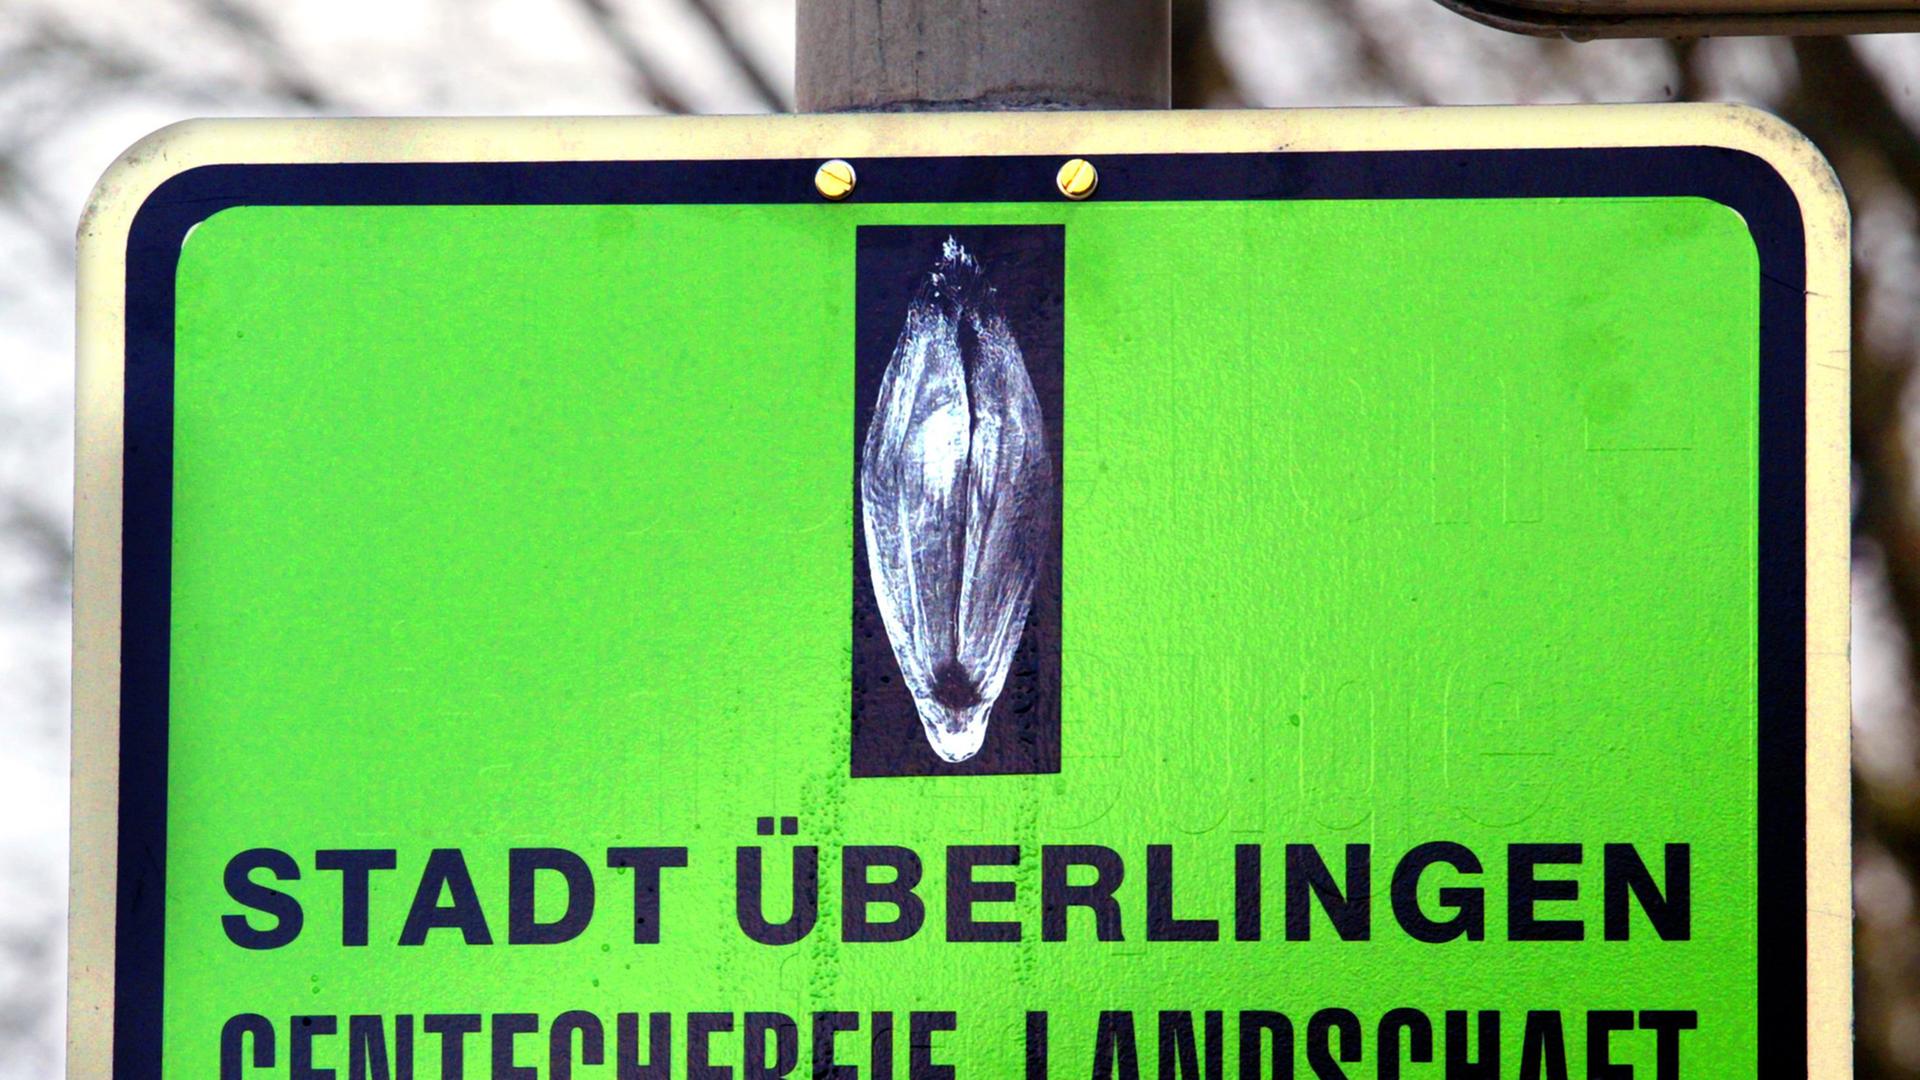 Die Stadt Überlingen am Bodensee macht ihre Ablehnung gentechnisch veränderter Pflanzen mit einem Schild an einem Ortseingang deutlich: "Stadt Überlingen - gentechfreie Landschaft" heißt es auf der grünen Informationstafel.